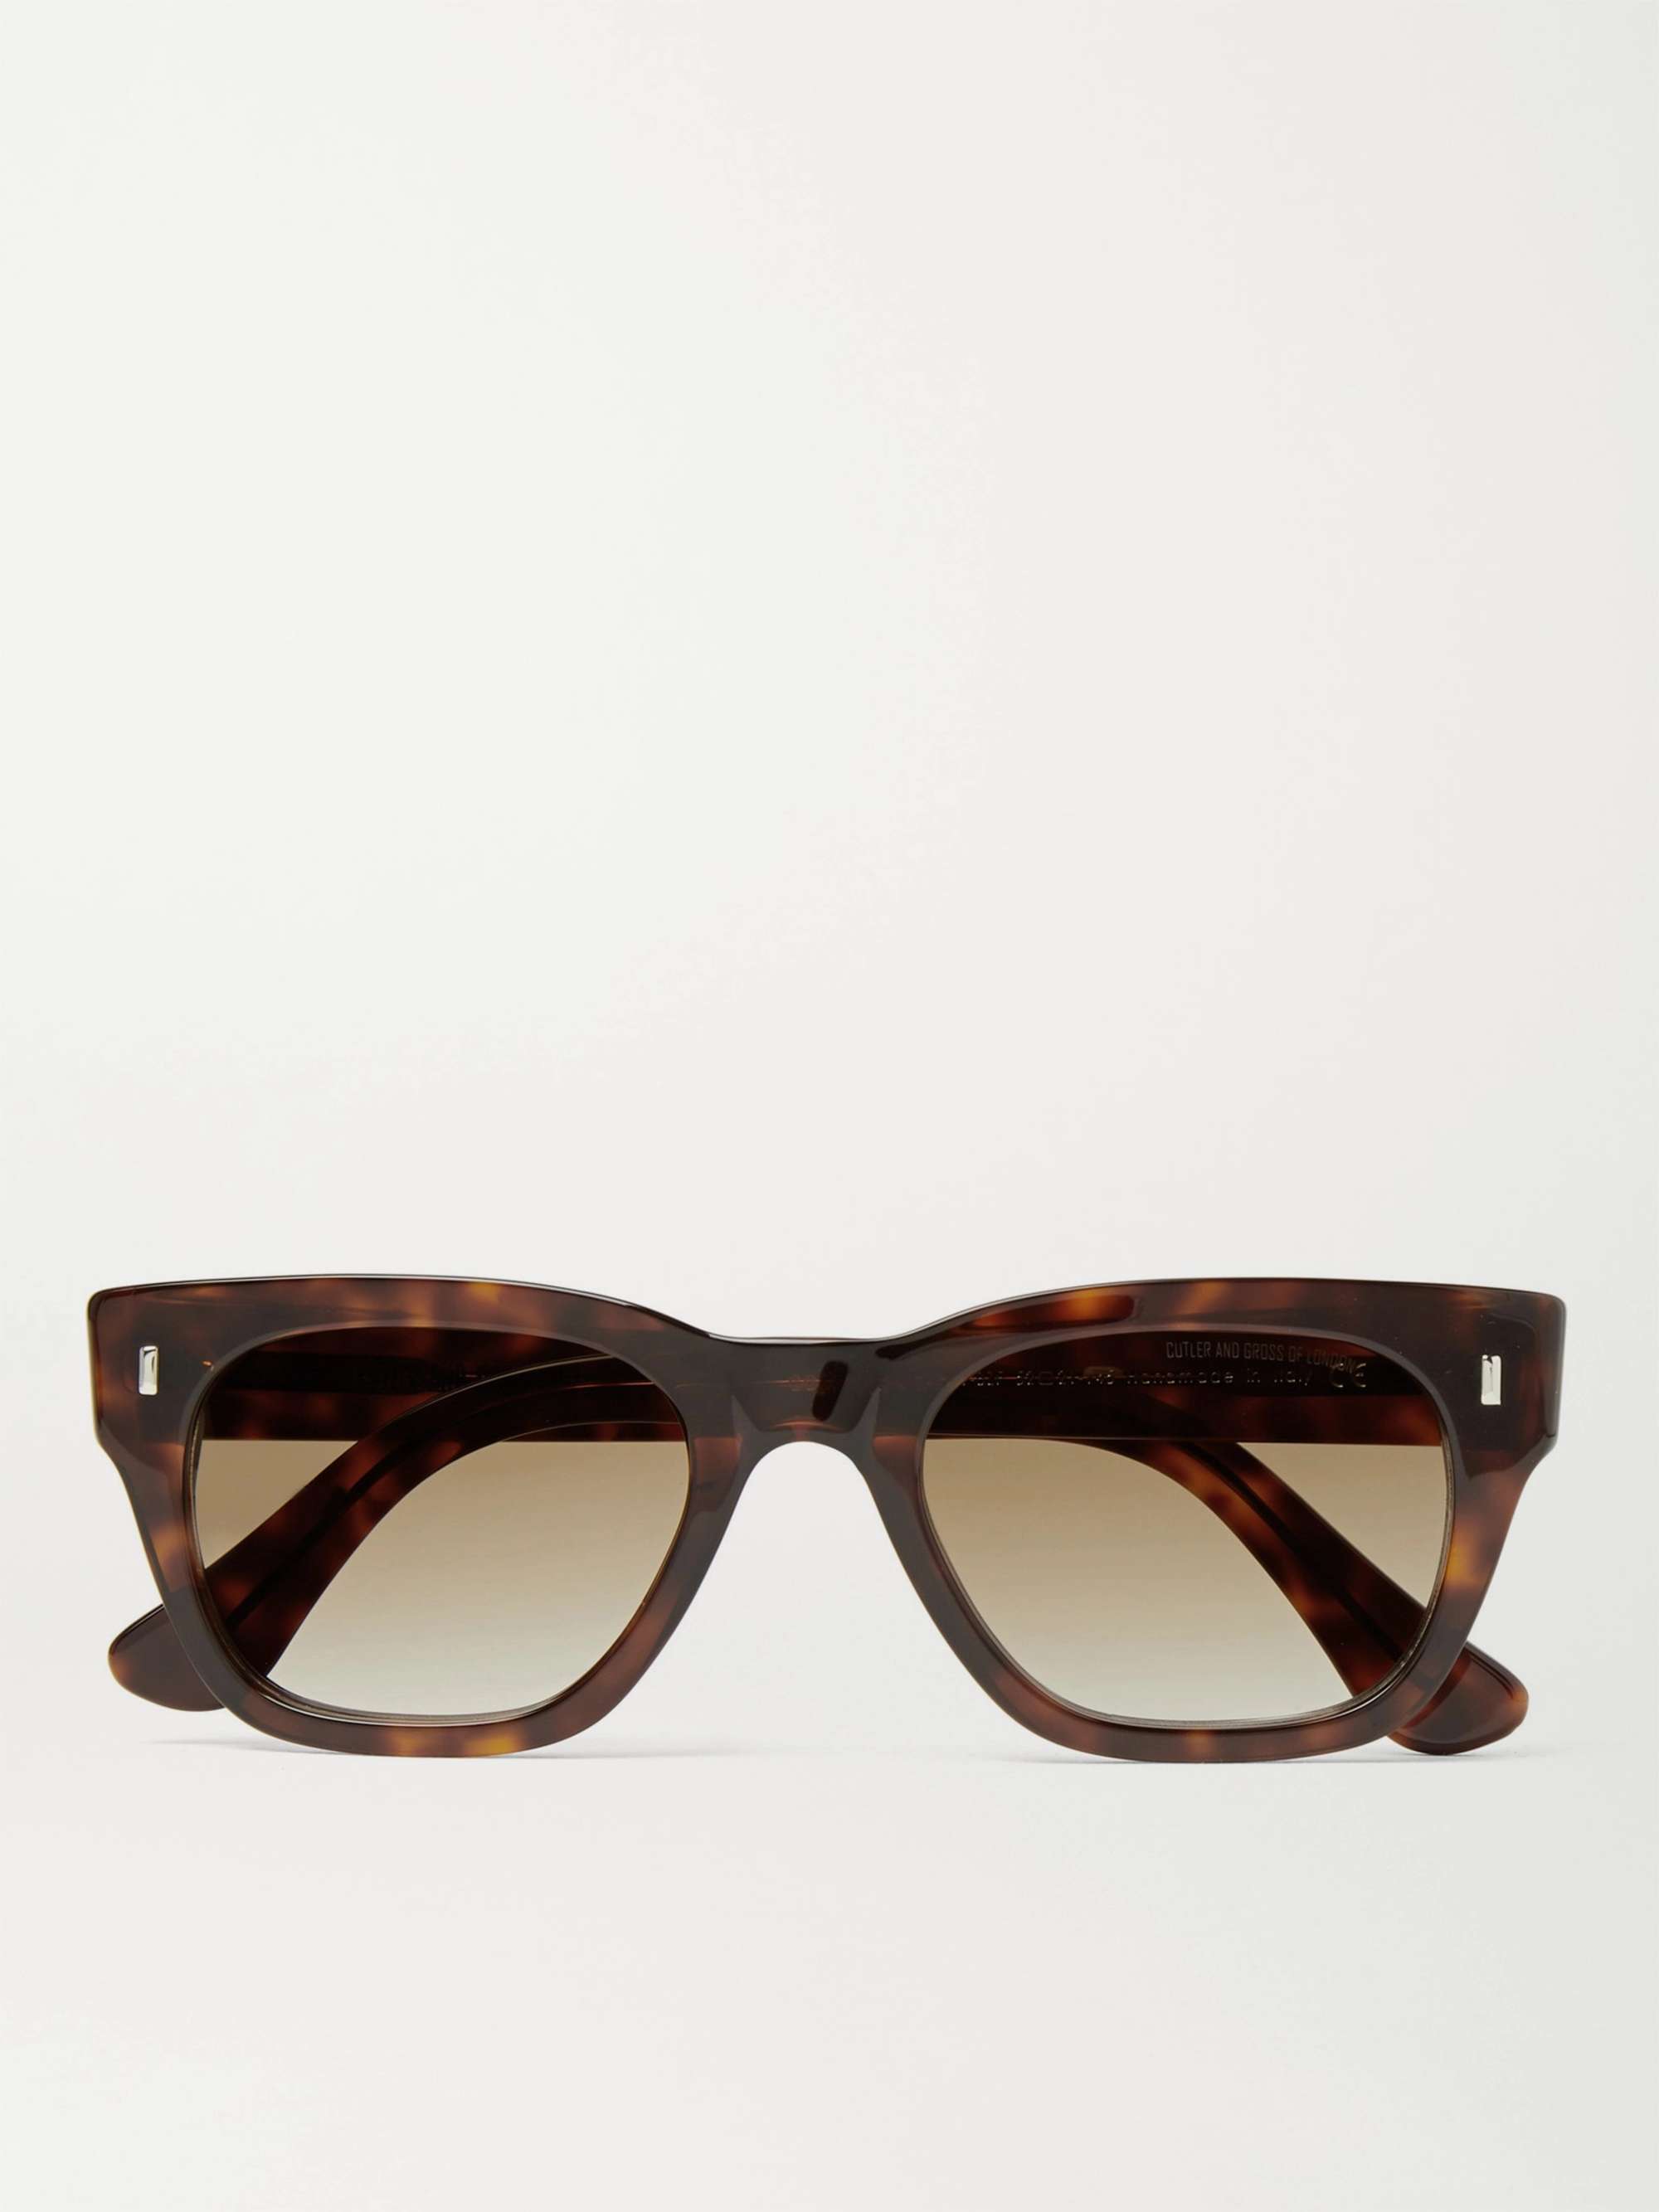 CUTLER AND GROSS Square-Frame Tortoiseshell Acetate Sunglasses